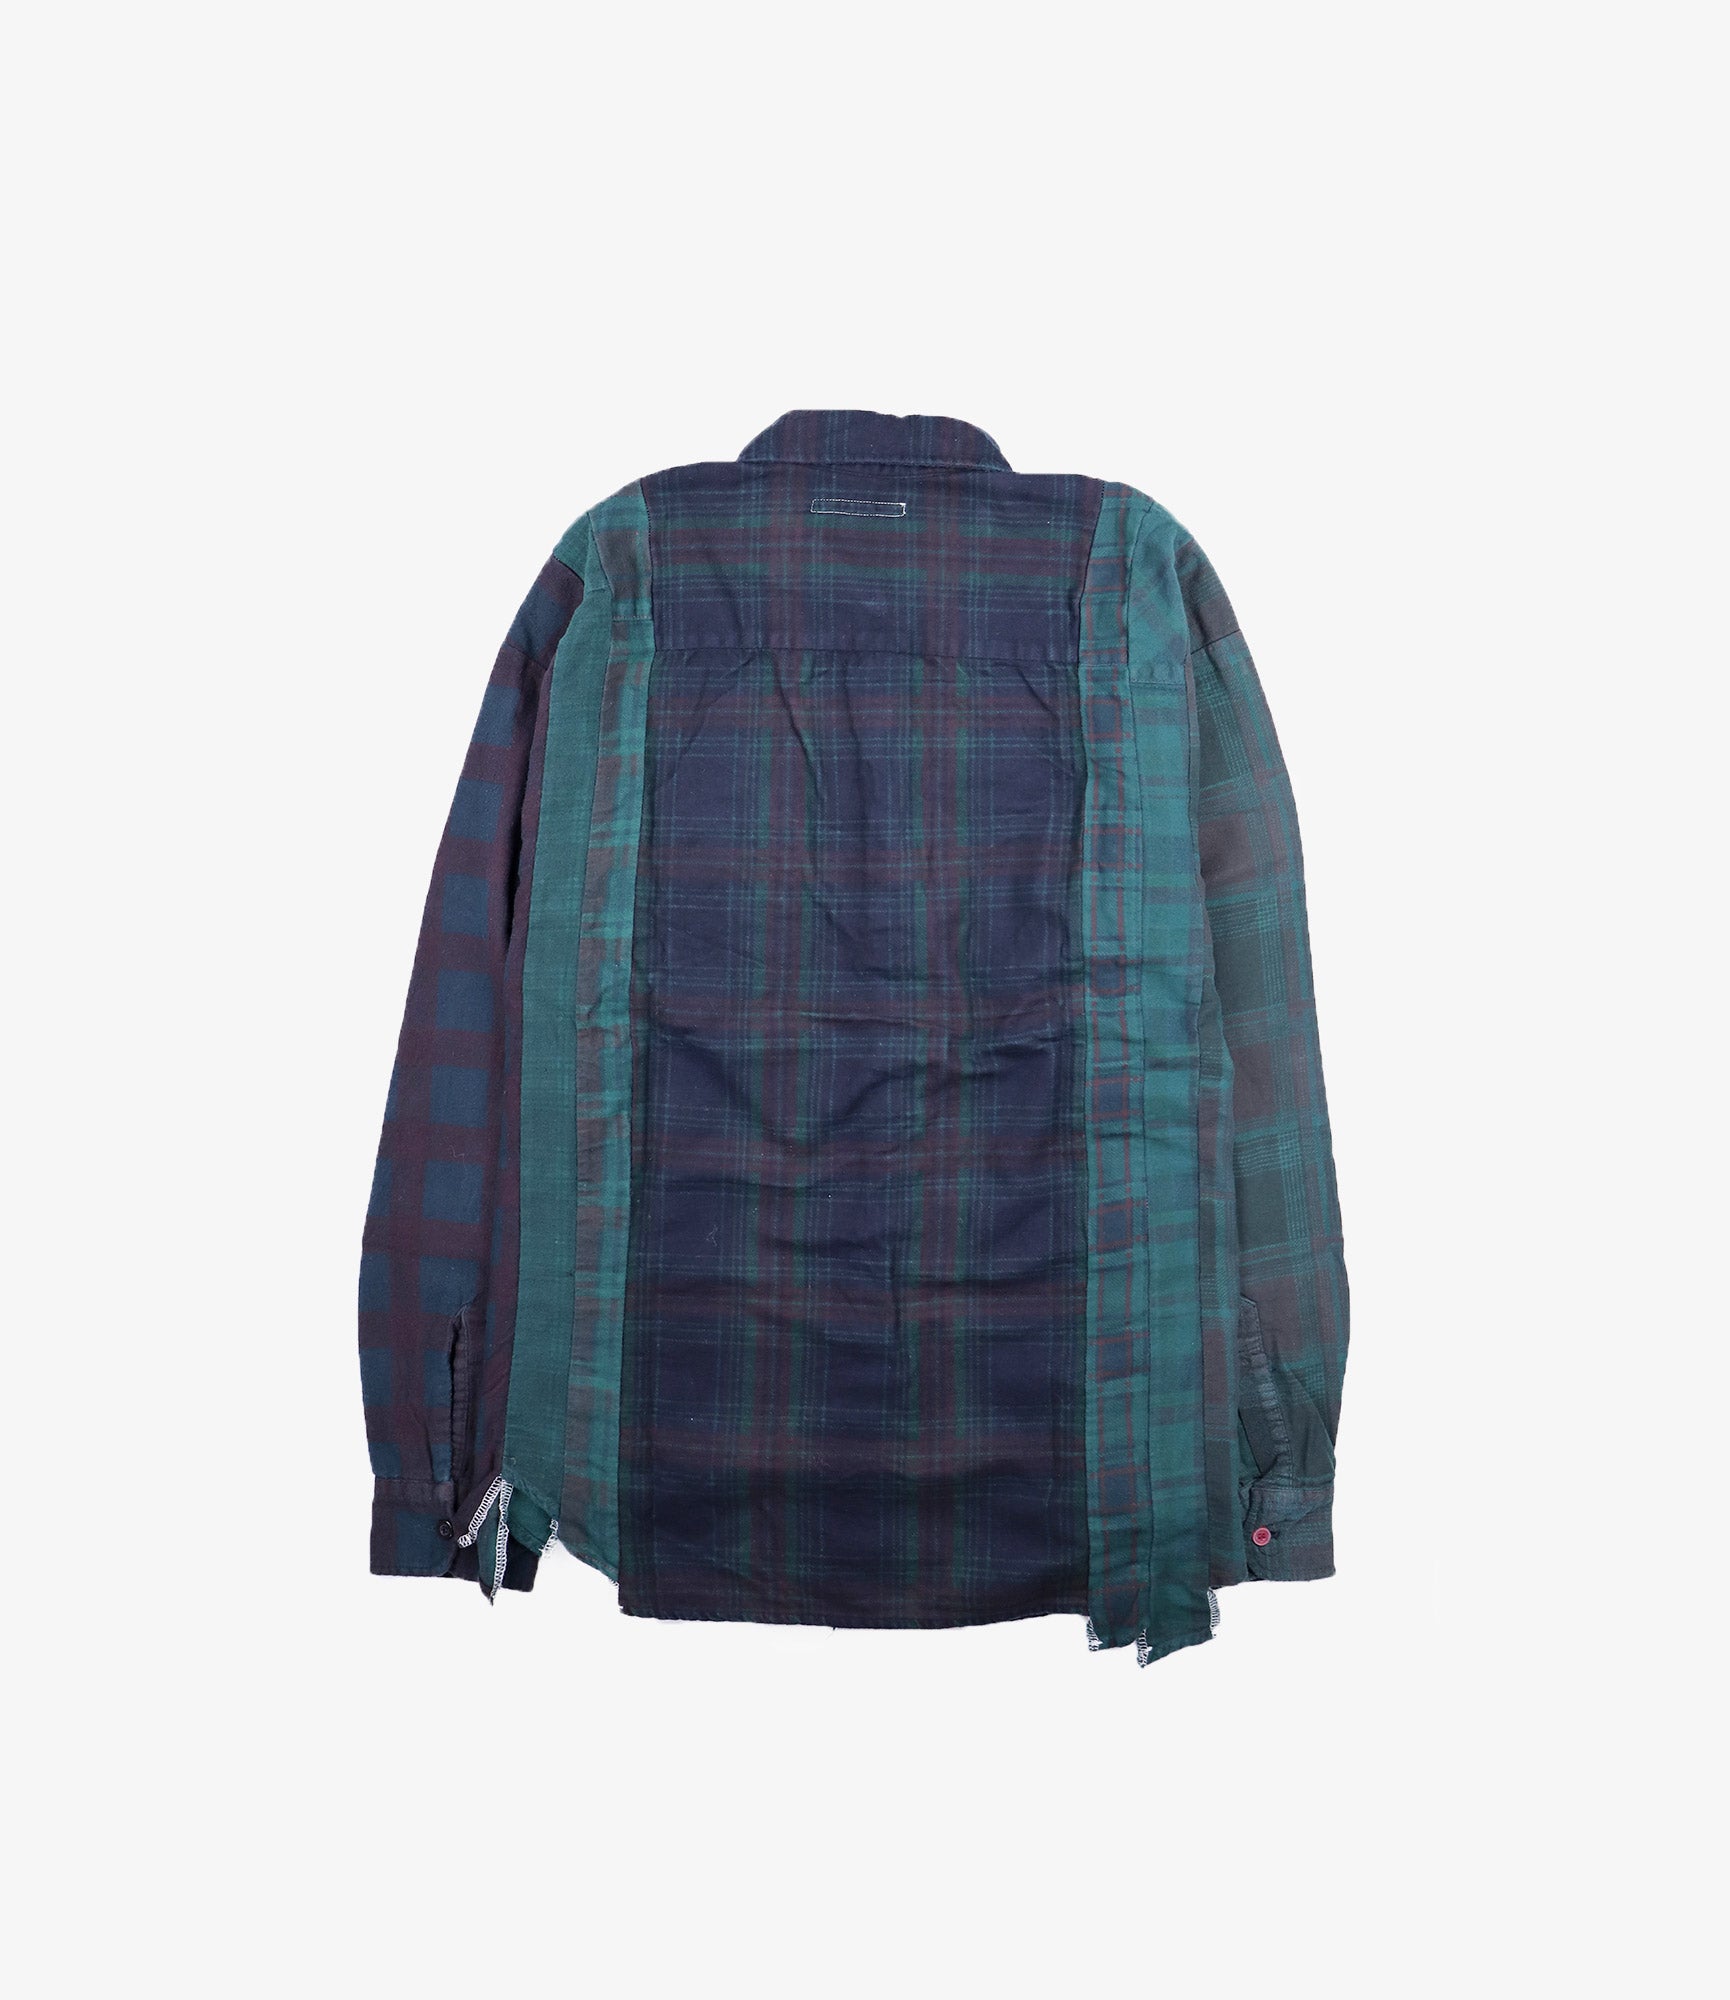 Flannel Shirt - 7 Cuts Shirt / Over Dye - Green